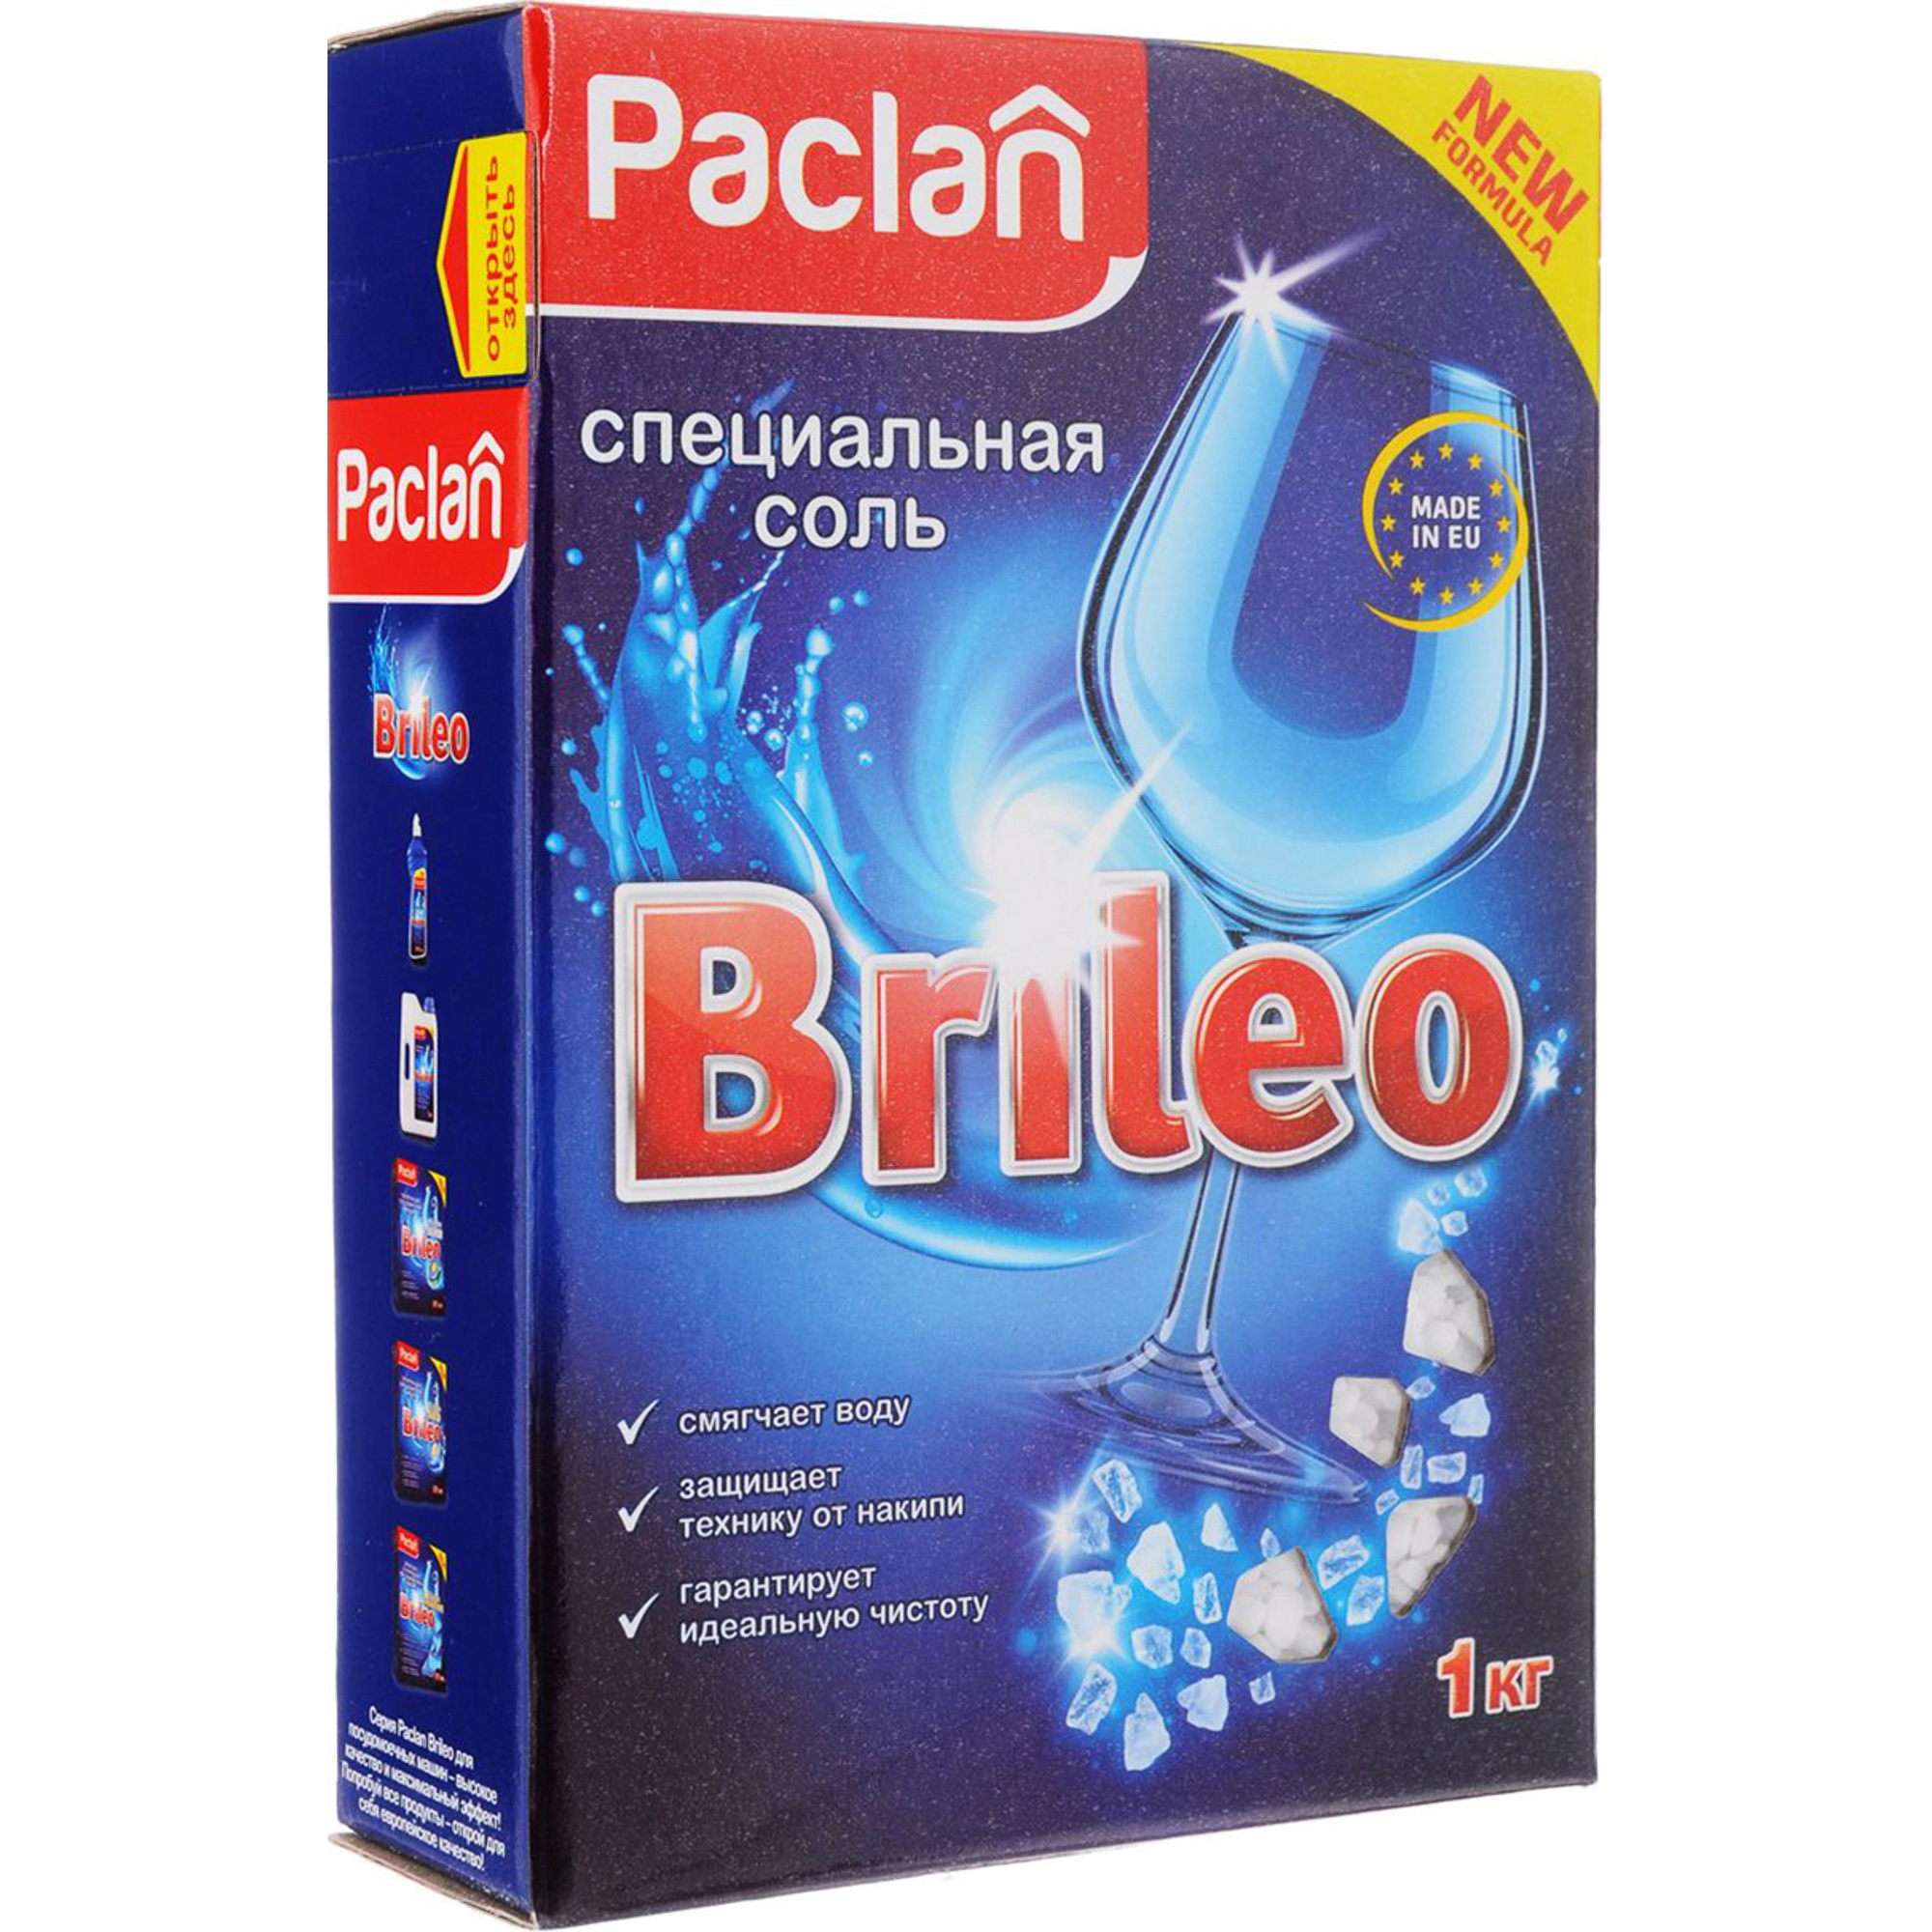 Специальная соль Paclan Brileo для посудомоечных машин 1 кг наружний сифон для стиральной и посудомоечной машин styron